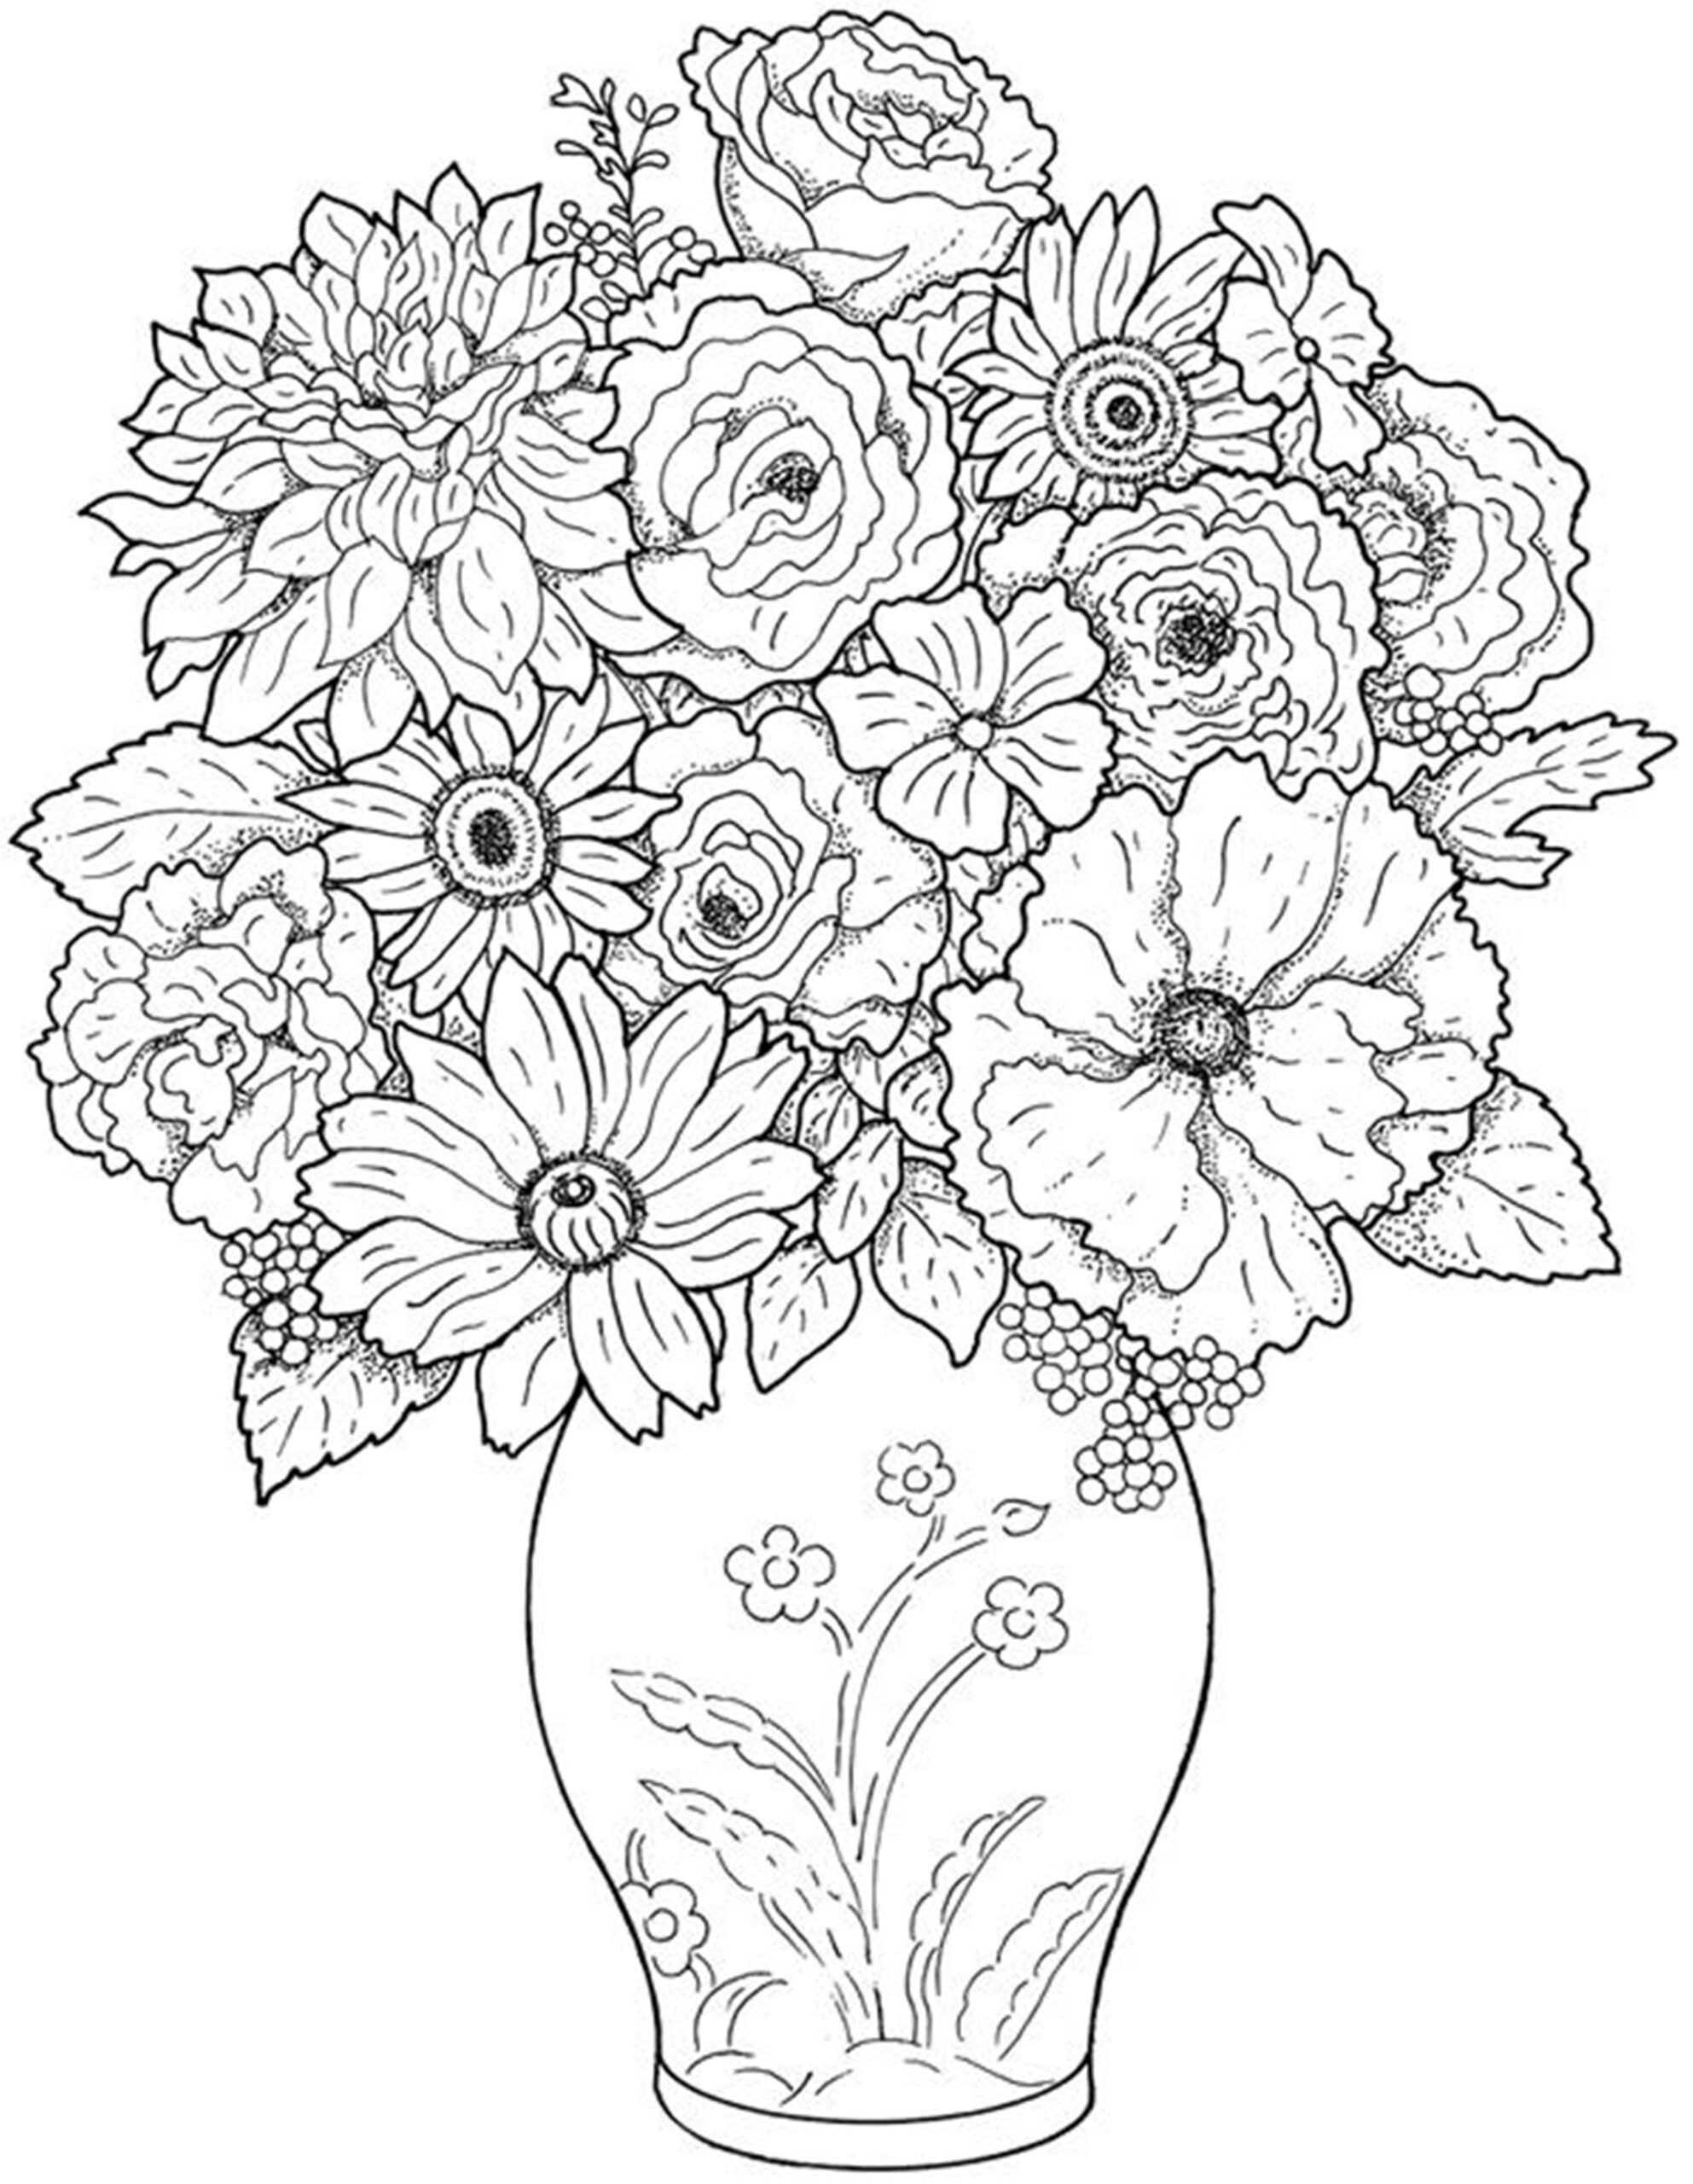 contoh gambar sketsa bunga